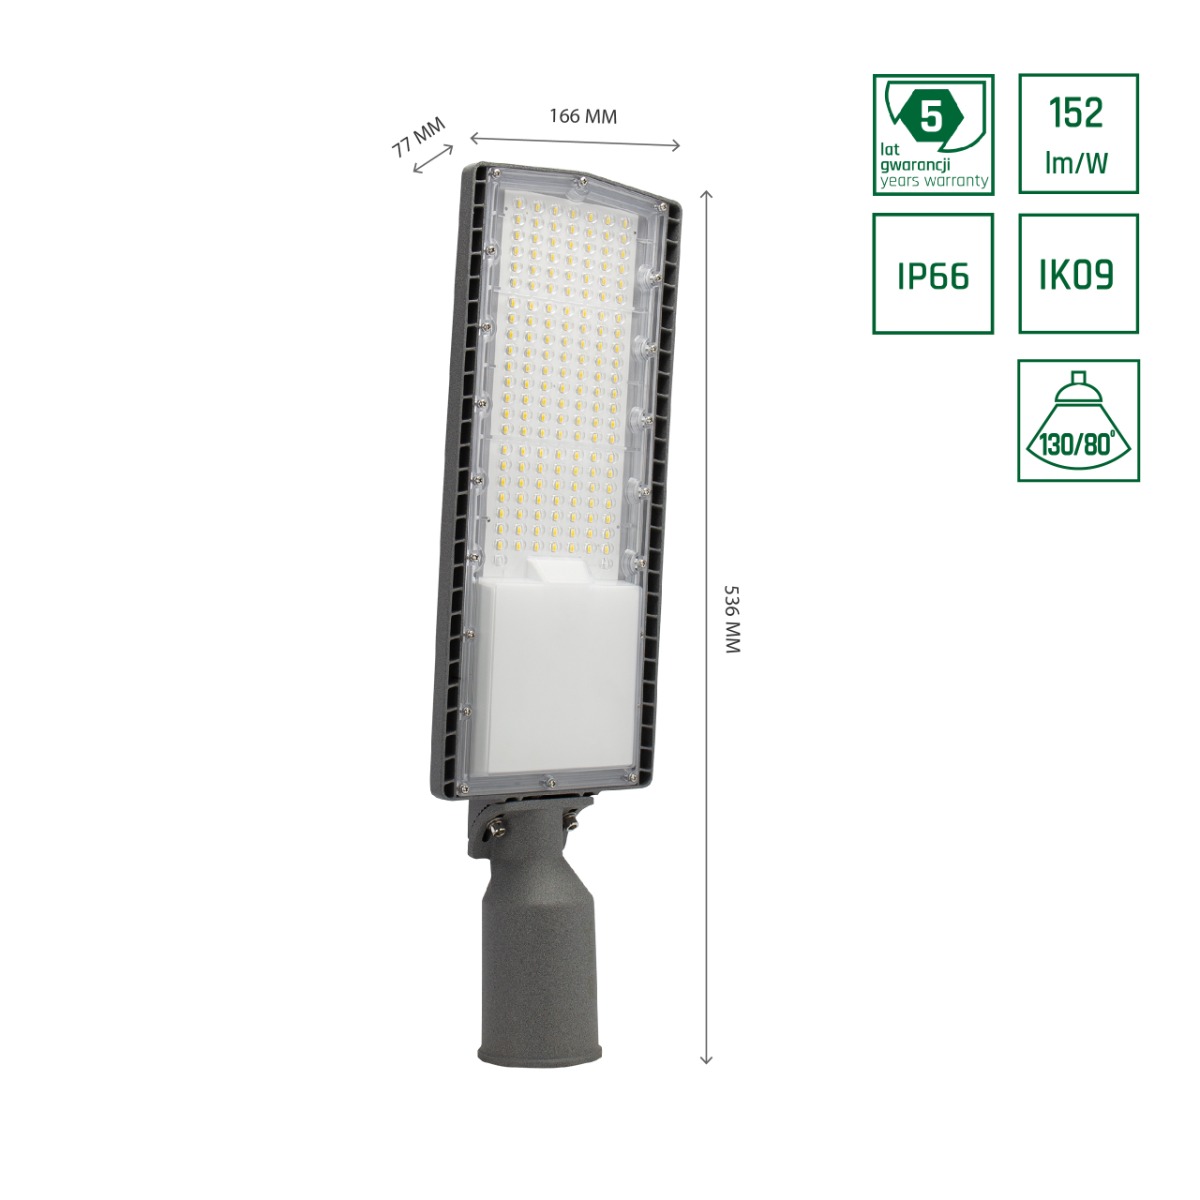 Iluminación Pública LED de 100W basculante con eficiencia de 146L/W y clasificación IP66.